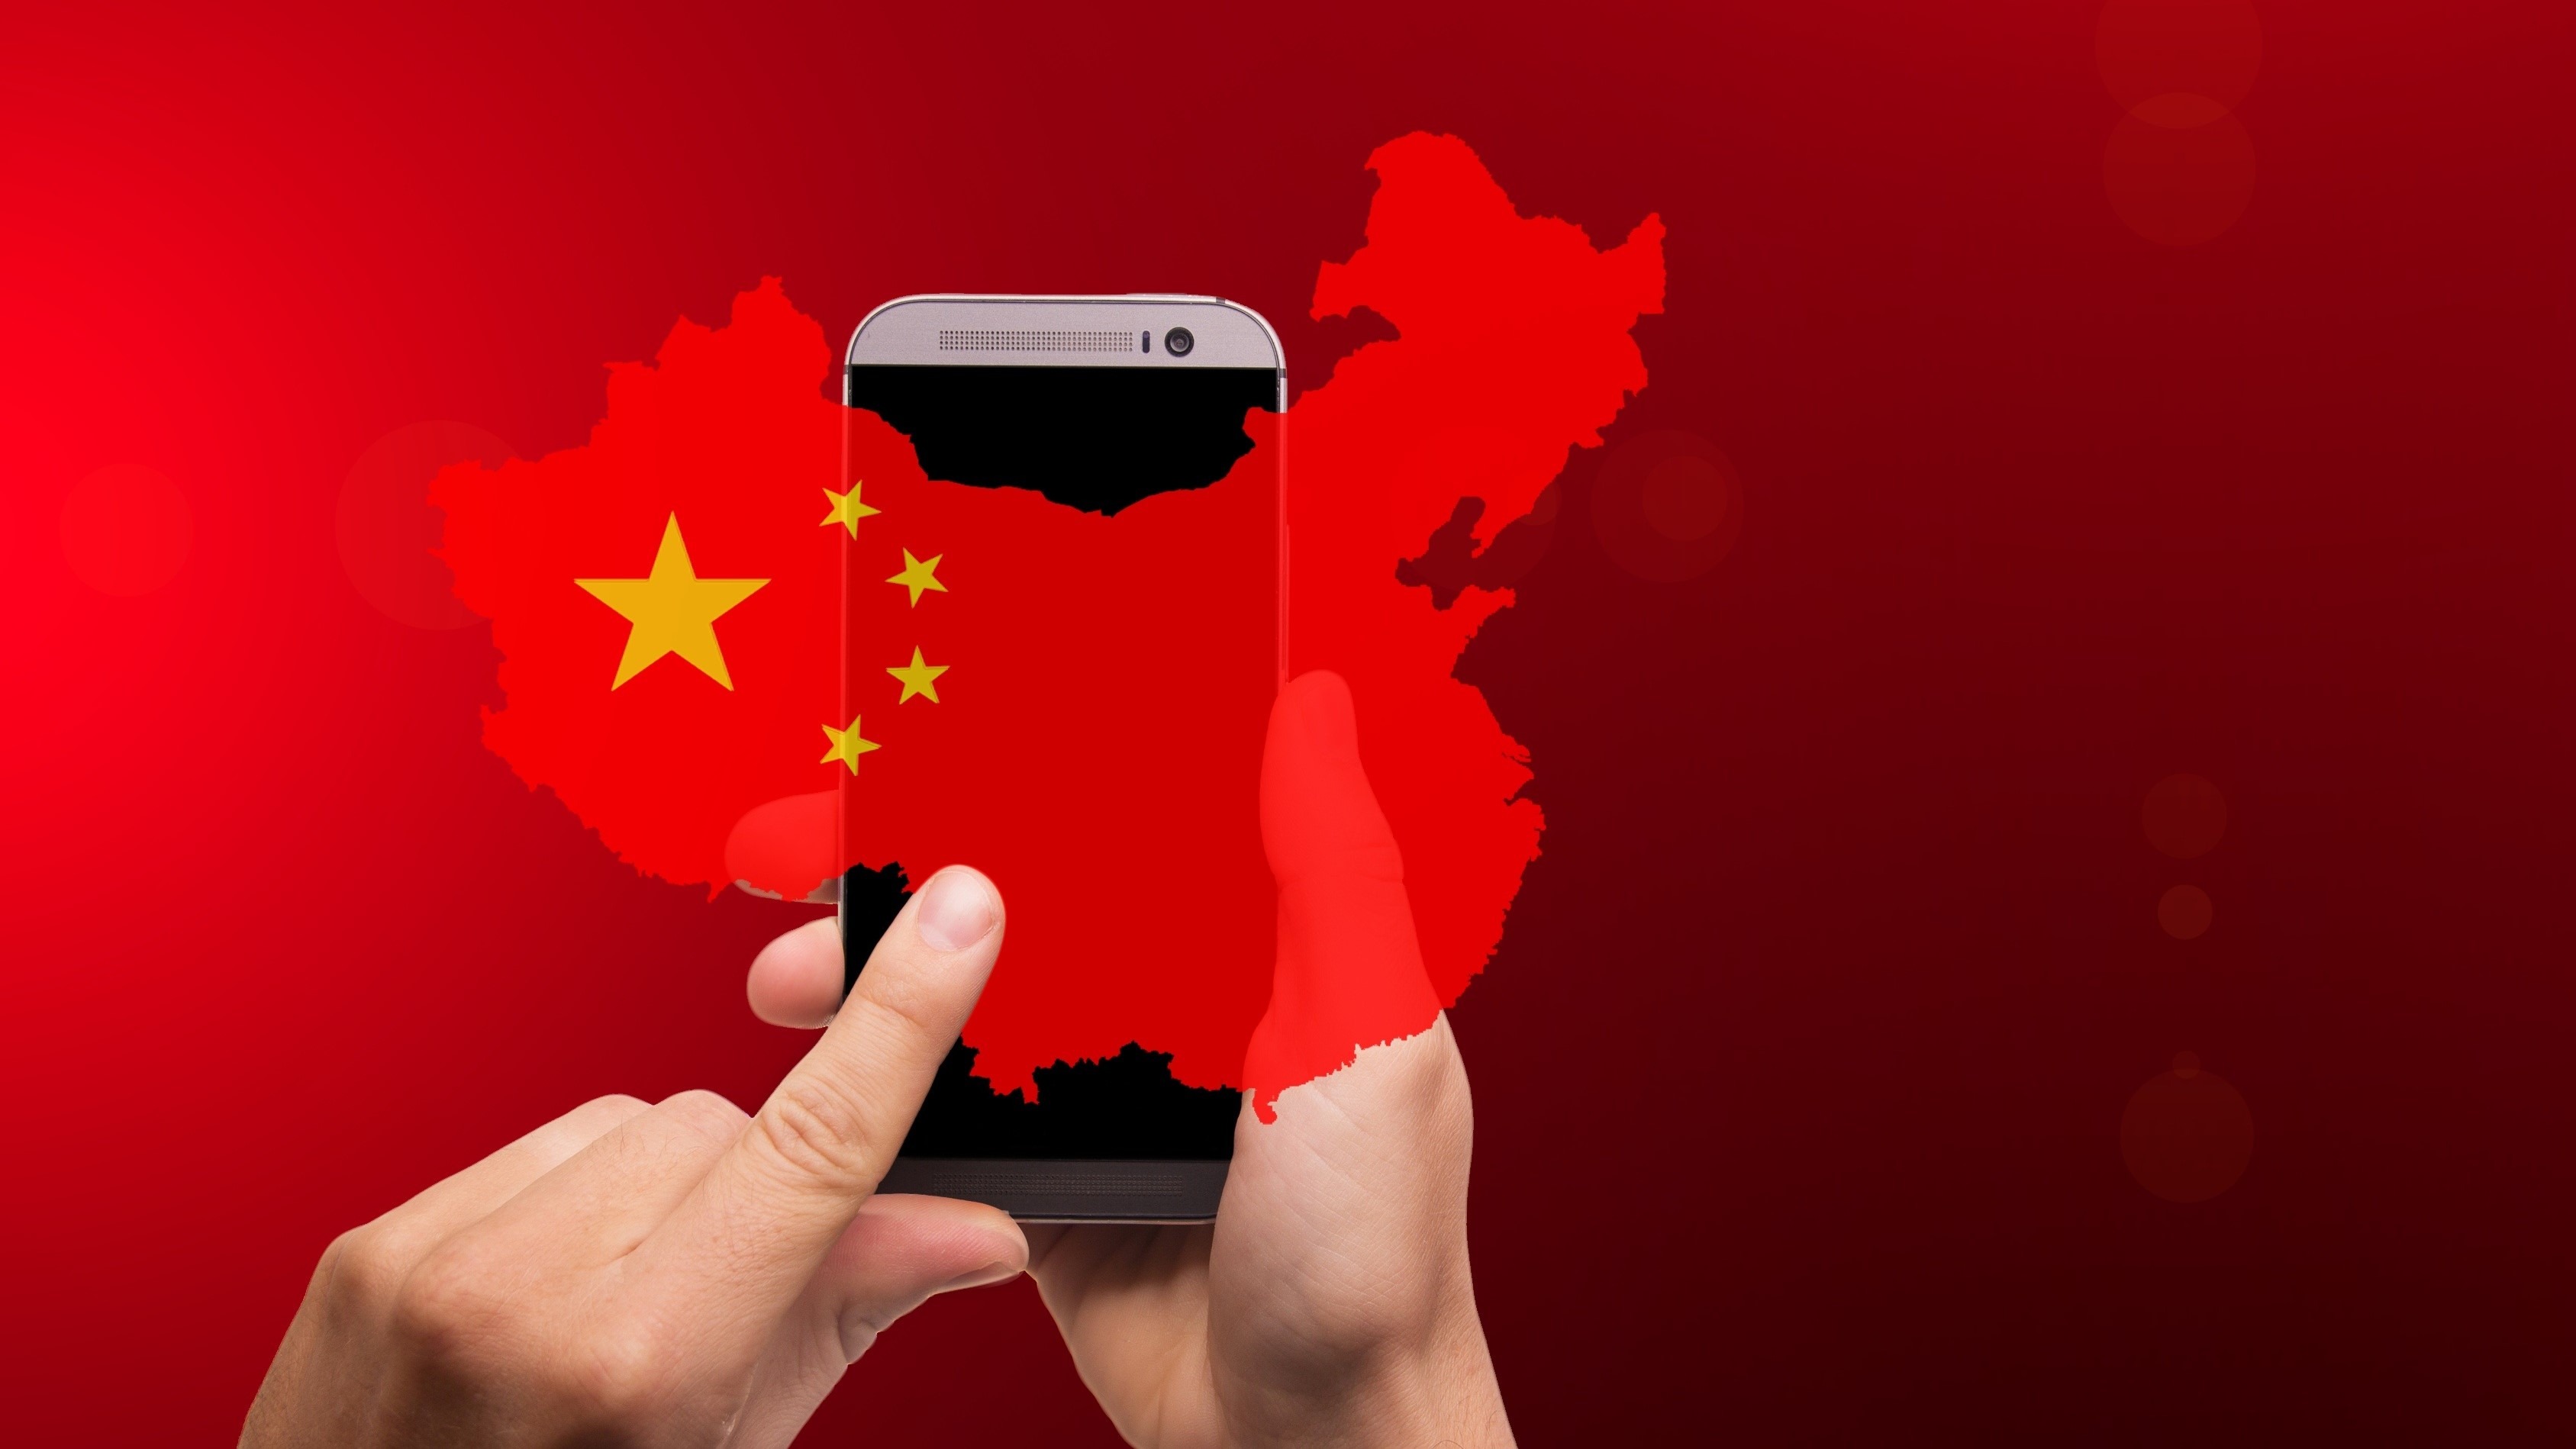 ادامه تحریم های امریکا برای شرکت های چینی: ممنوعیت استفاده از محصولات هوآوی و ZTE